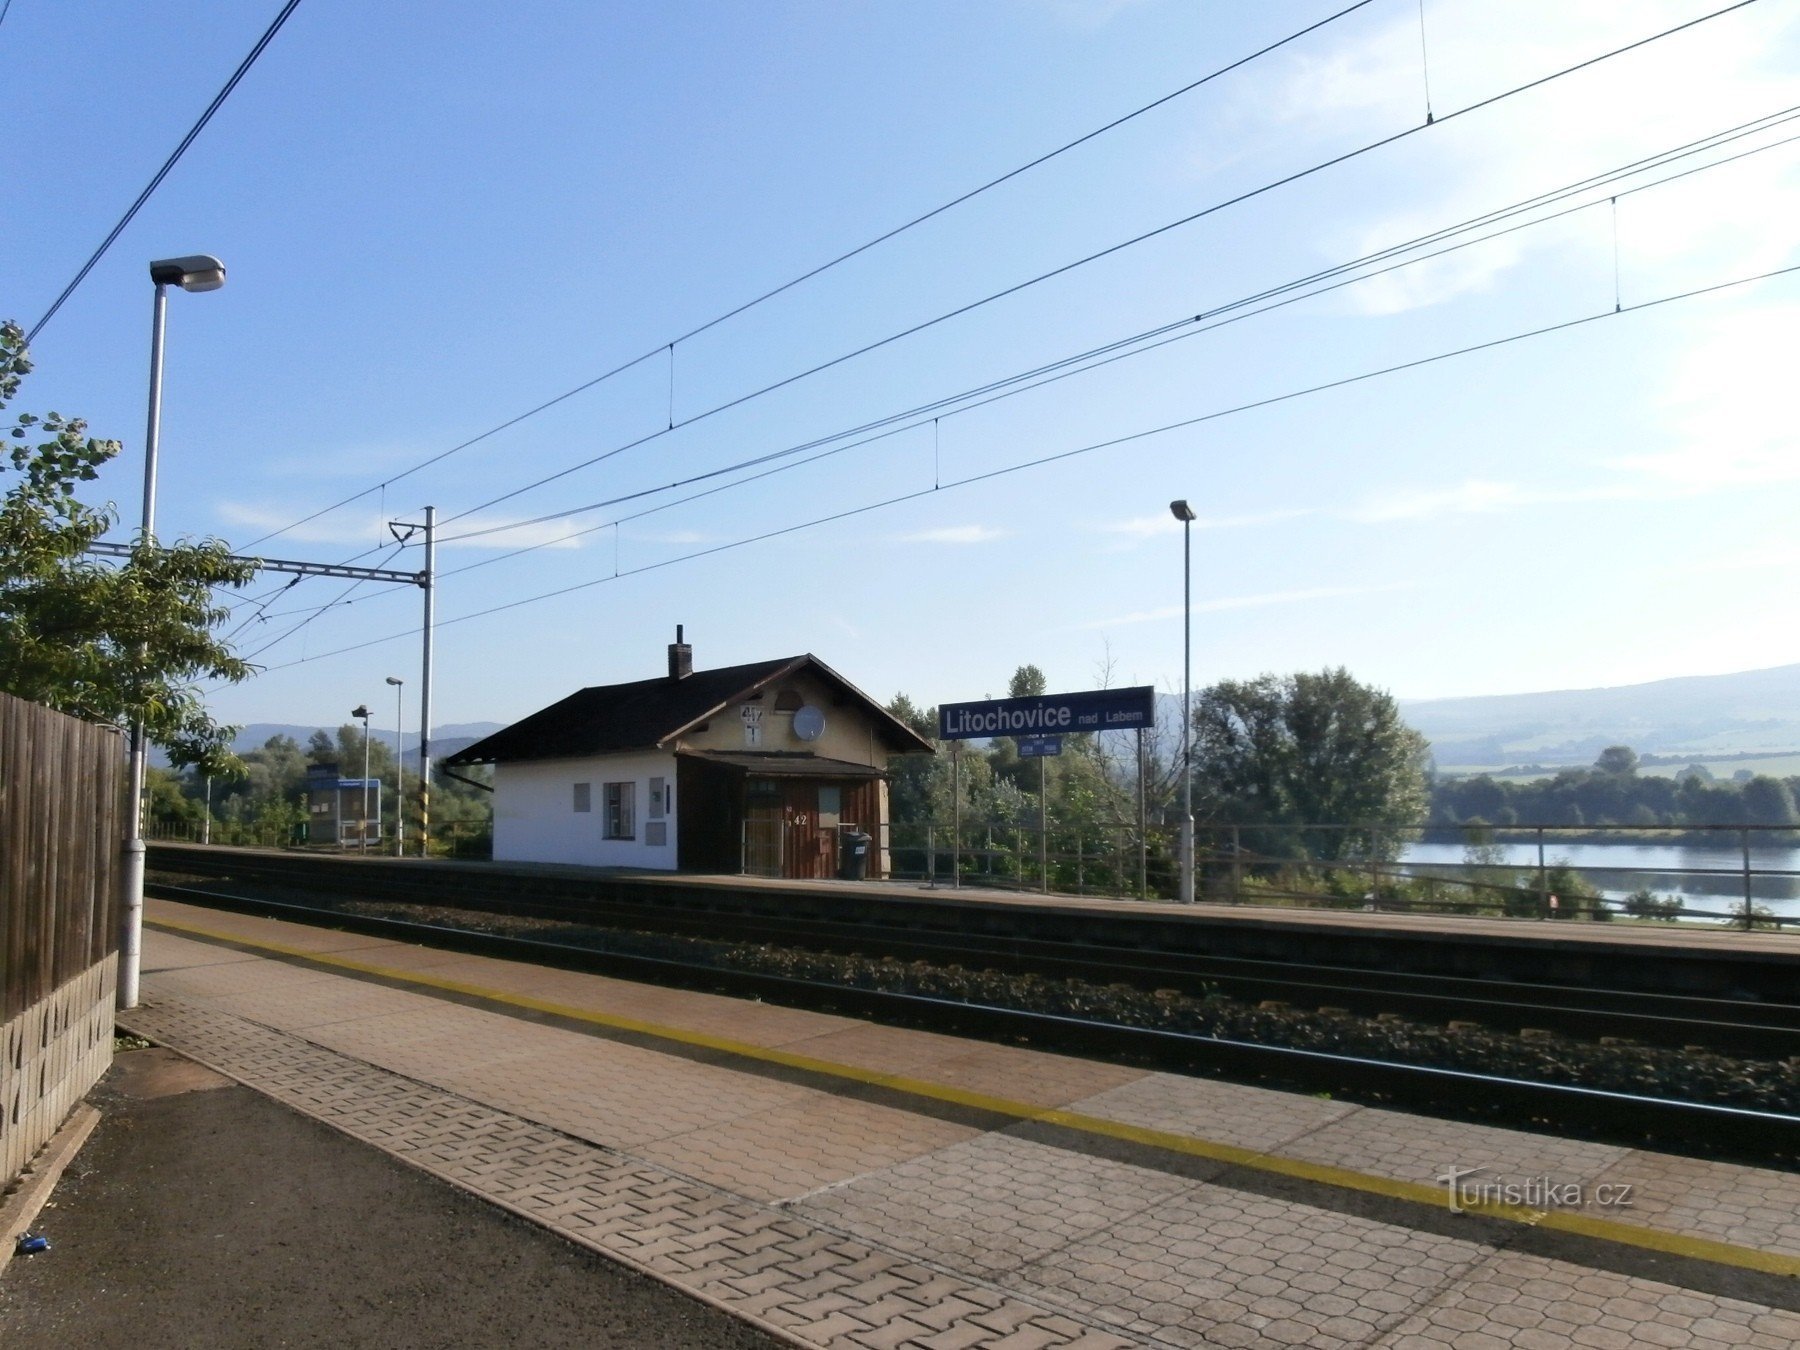 1. Stajalište vlaka Litochovice nad Labem